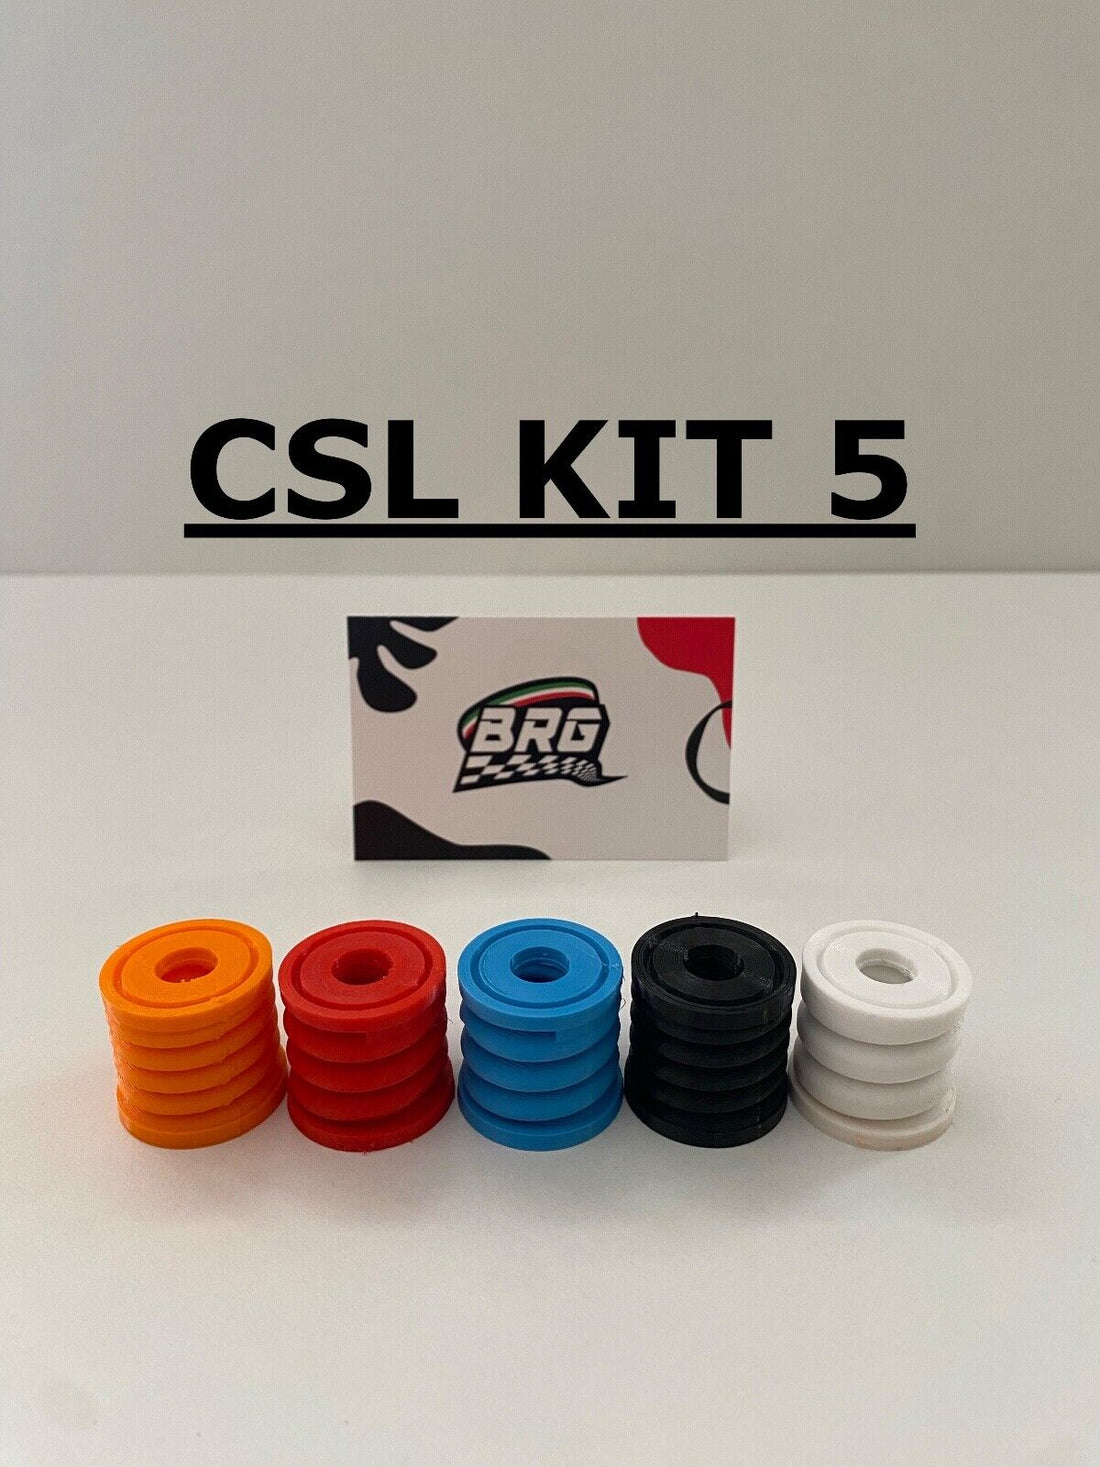 Fanatec CSL & CSL ELITE Brake Pedal Mod x3/x5 Kit